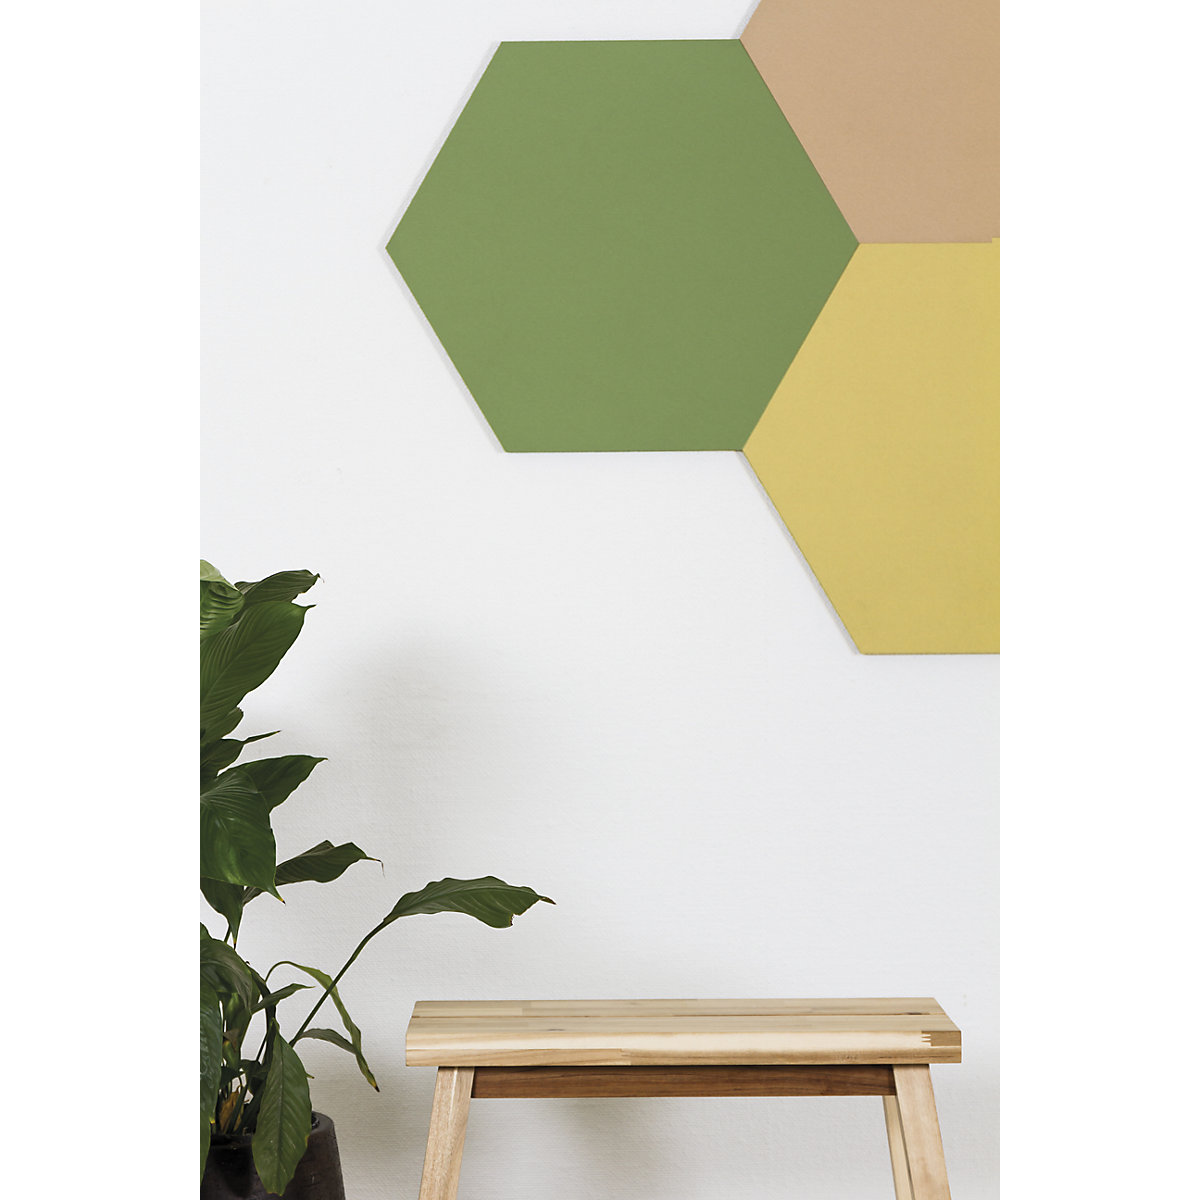 Hexagonal designer pin board – Chameleon (Product illustration 8)-7